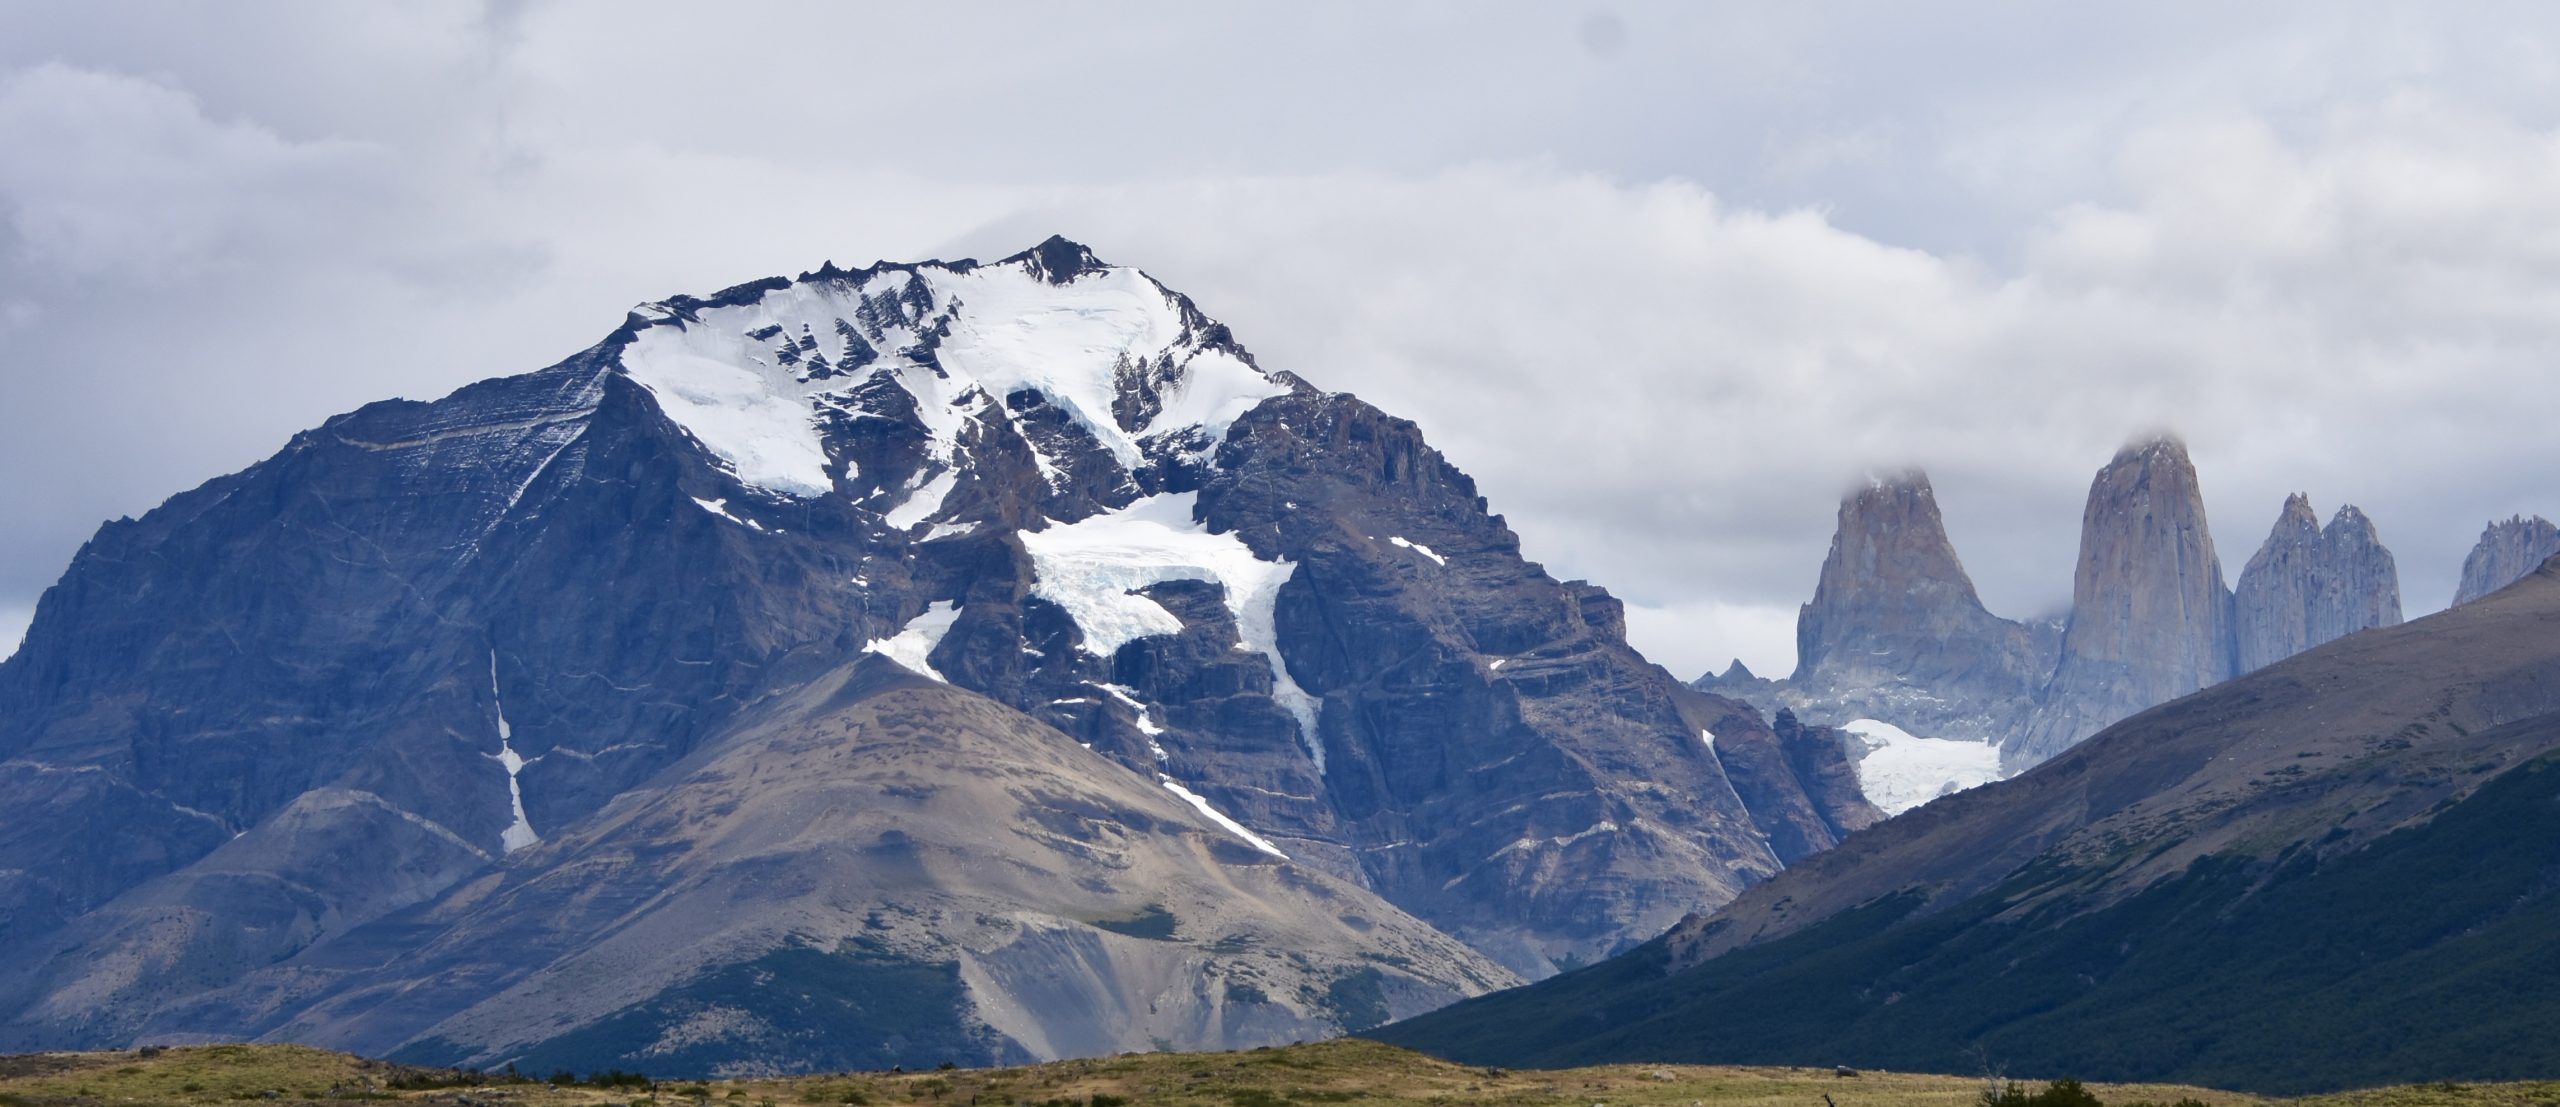 Torrres del Paine, Chile